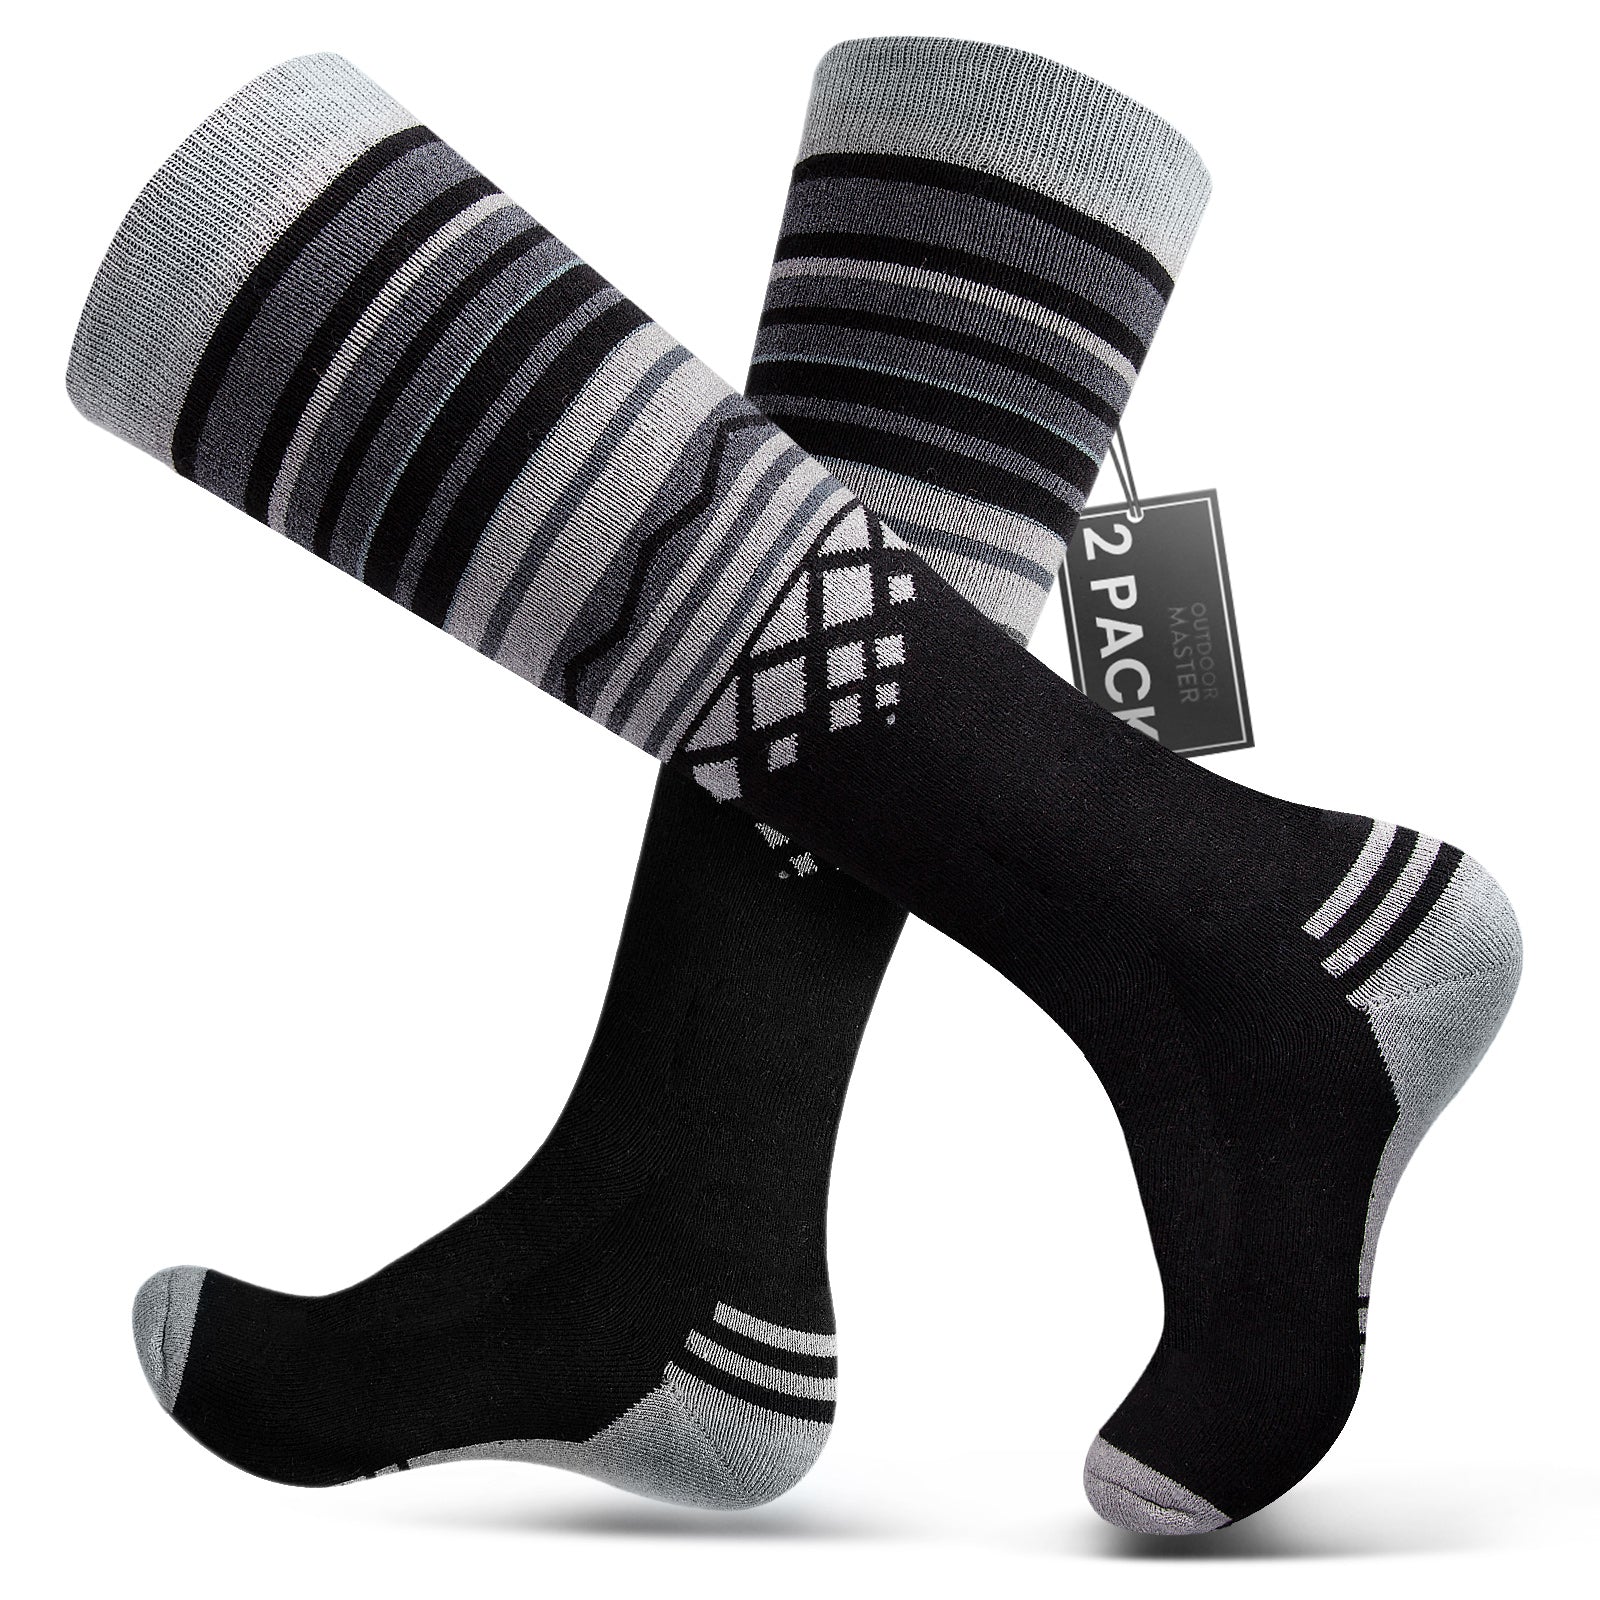 http://outdoormaster.com/cdn/shop/products/merino-wool-ski-socks-black-1.jpg?v=1666862044